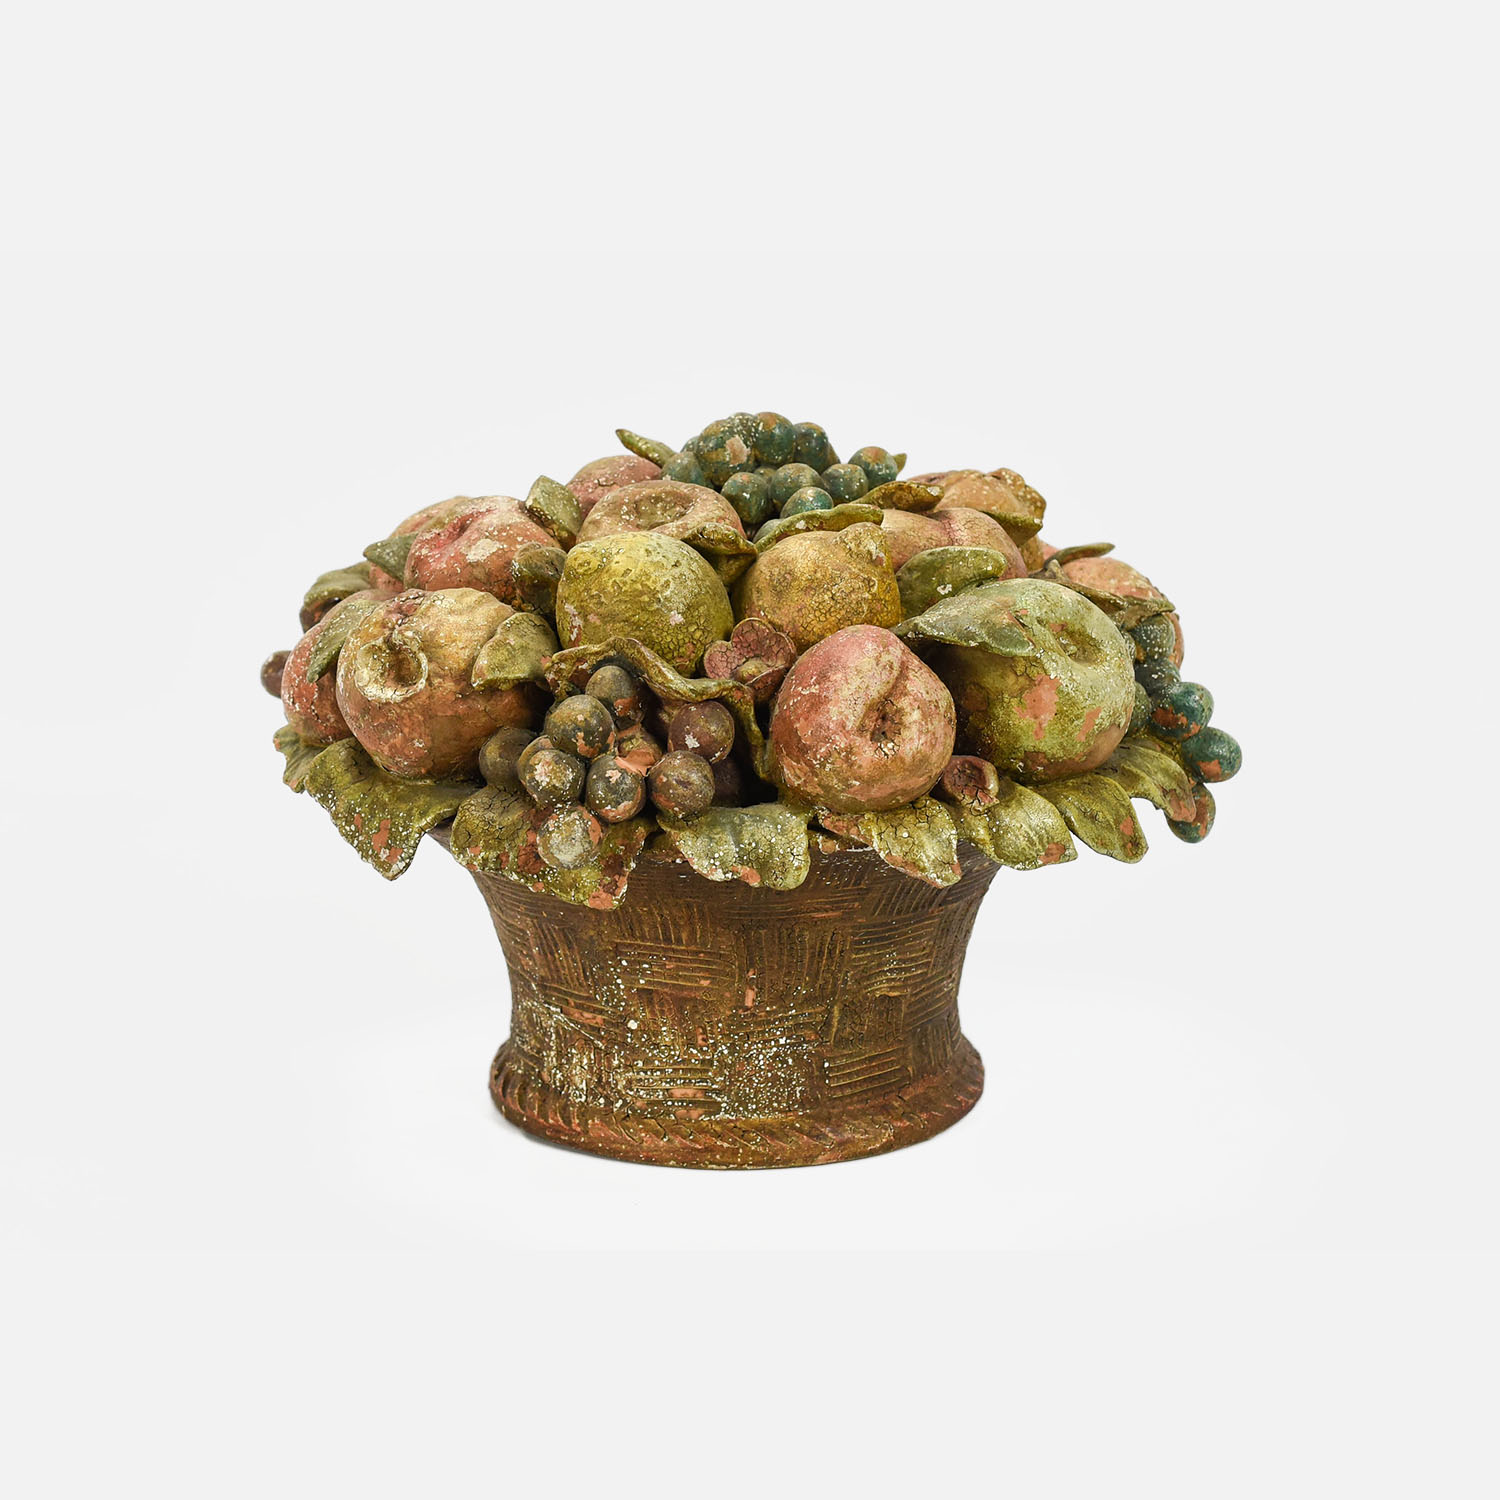 Antique Painted Terra Cotta Fruit Basket Centerpiece